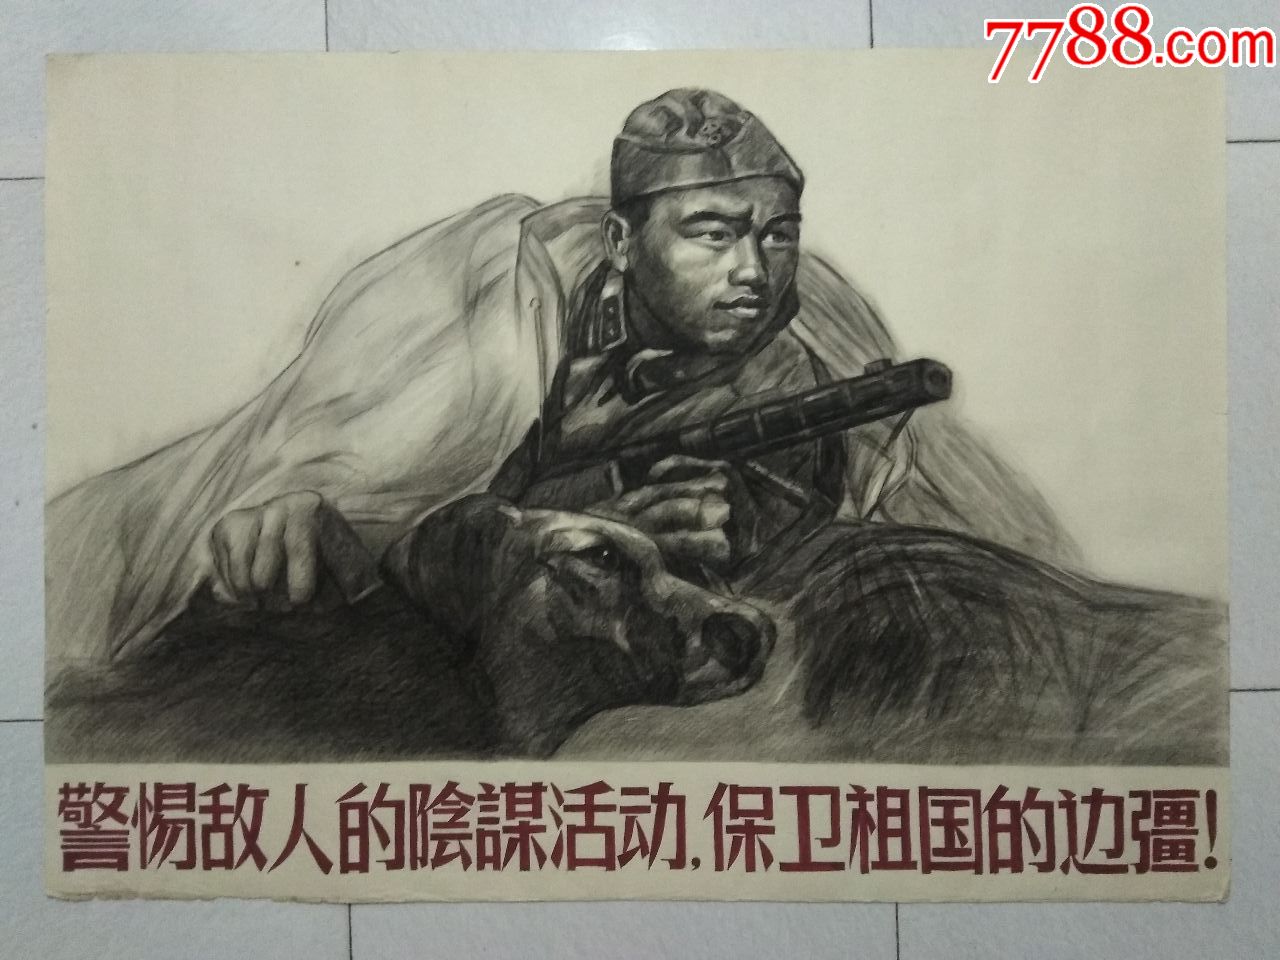 手绘素描宣传画·保卫祖国和平